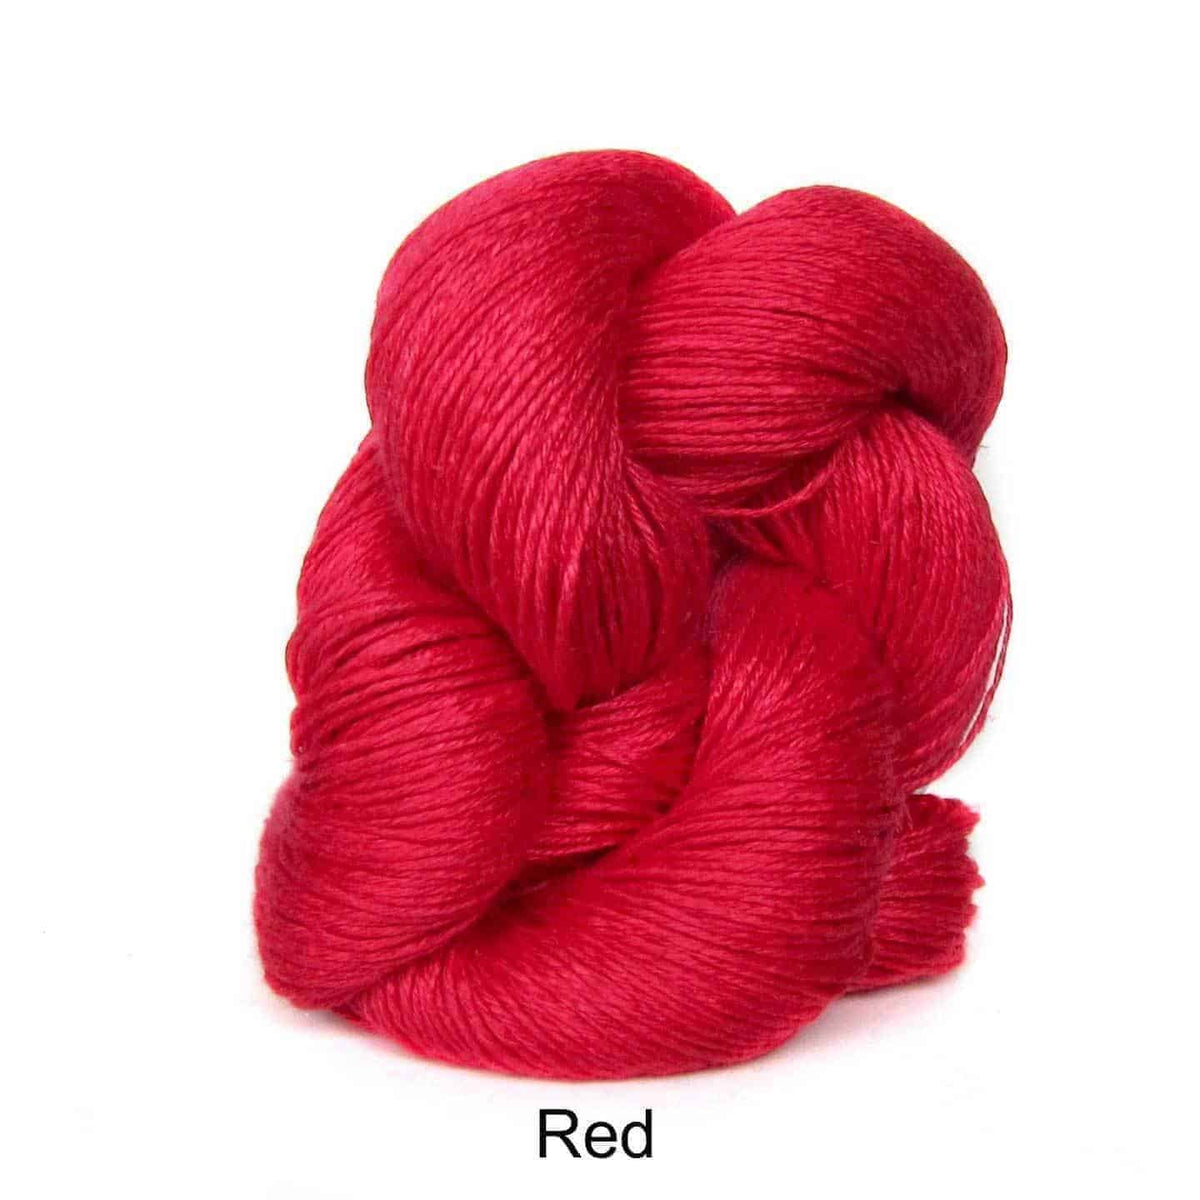 Euroflax Wet Spun Linen Yarn Red 2114